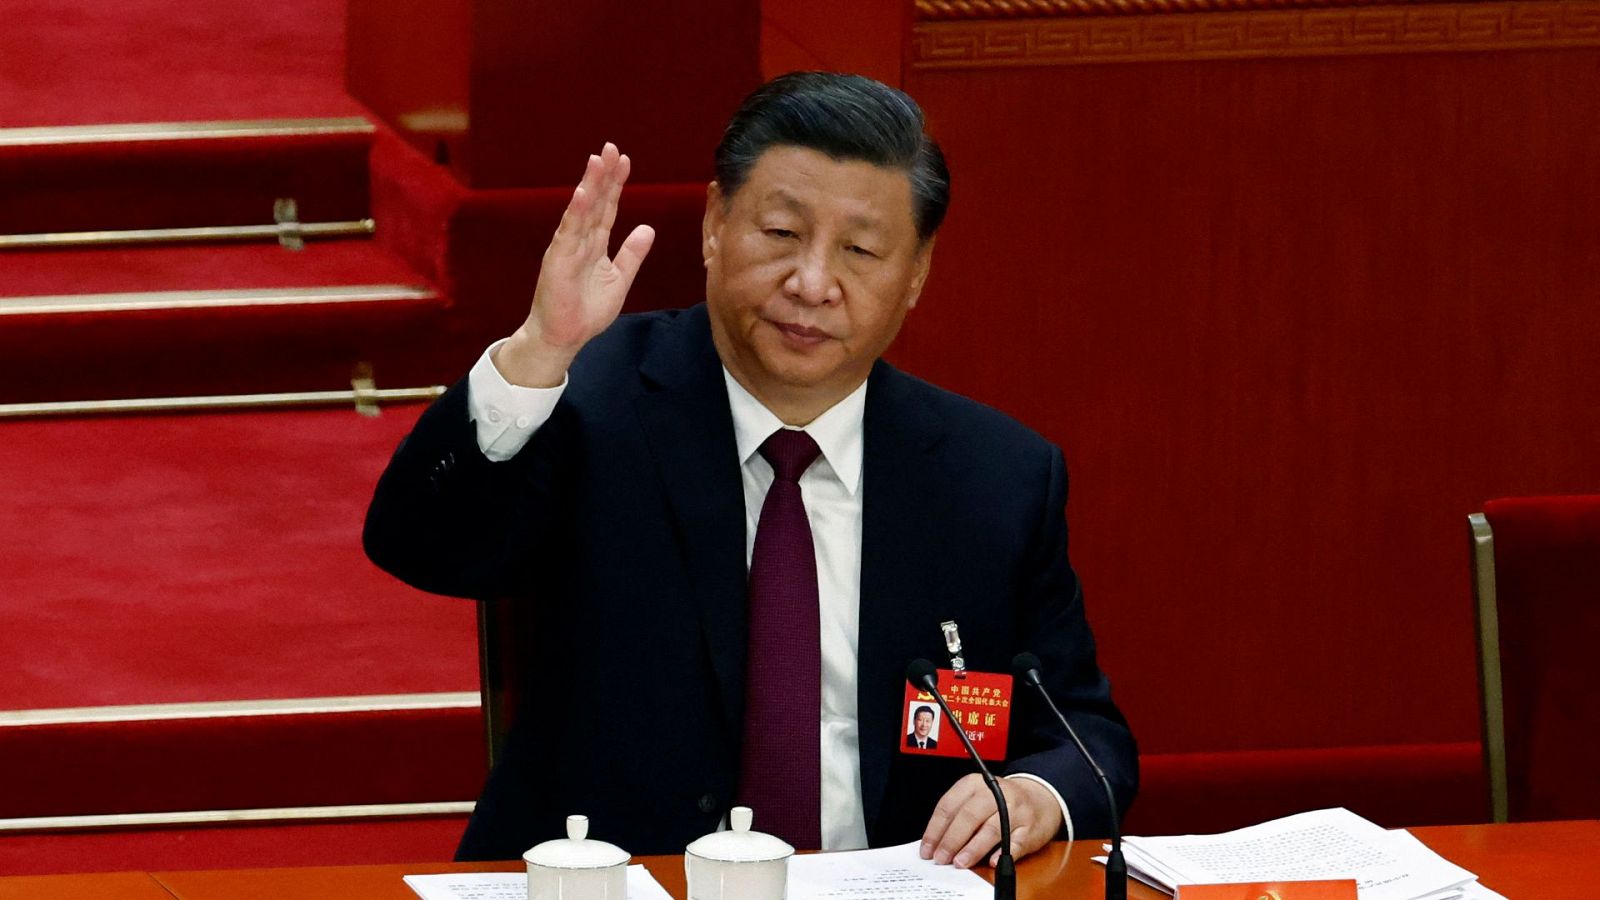 Xi Jinping, el líder chino más poderoso desde Mao